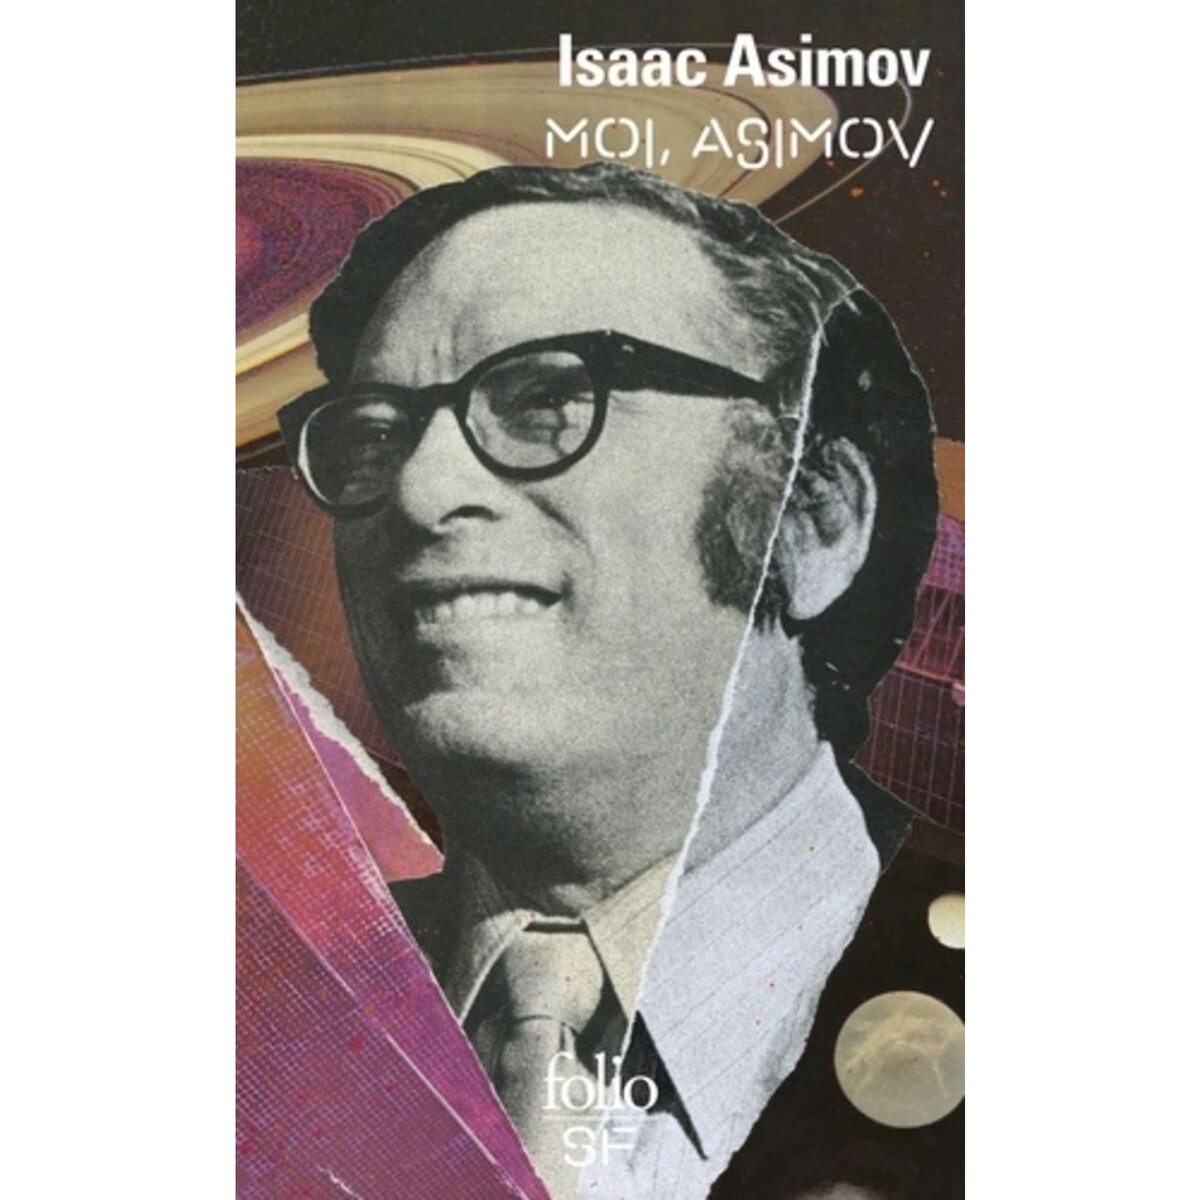  MOI, ASIMOV, Asimov Isaac